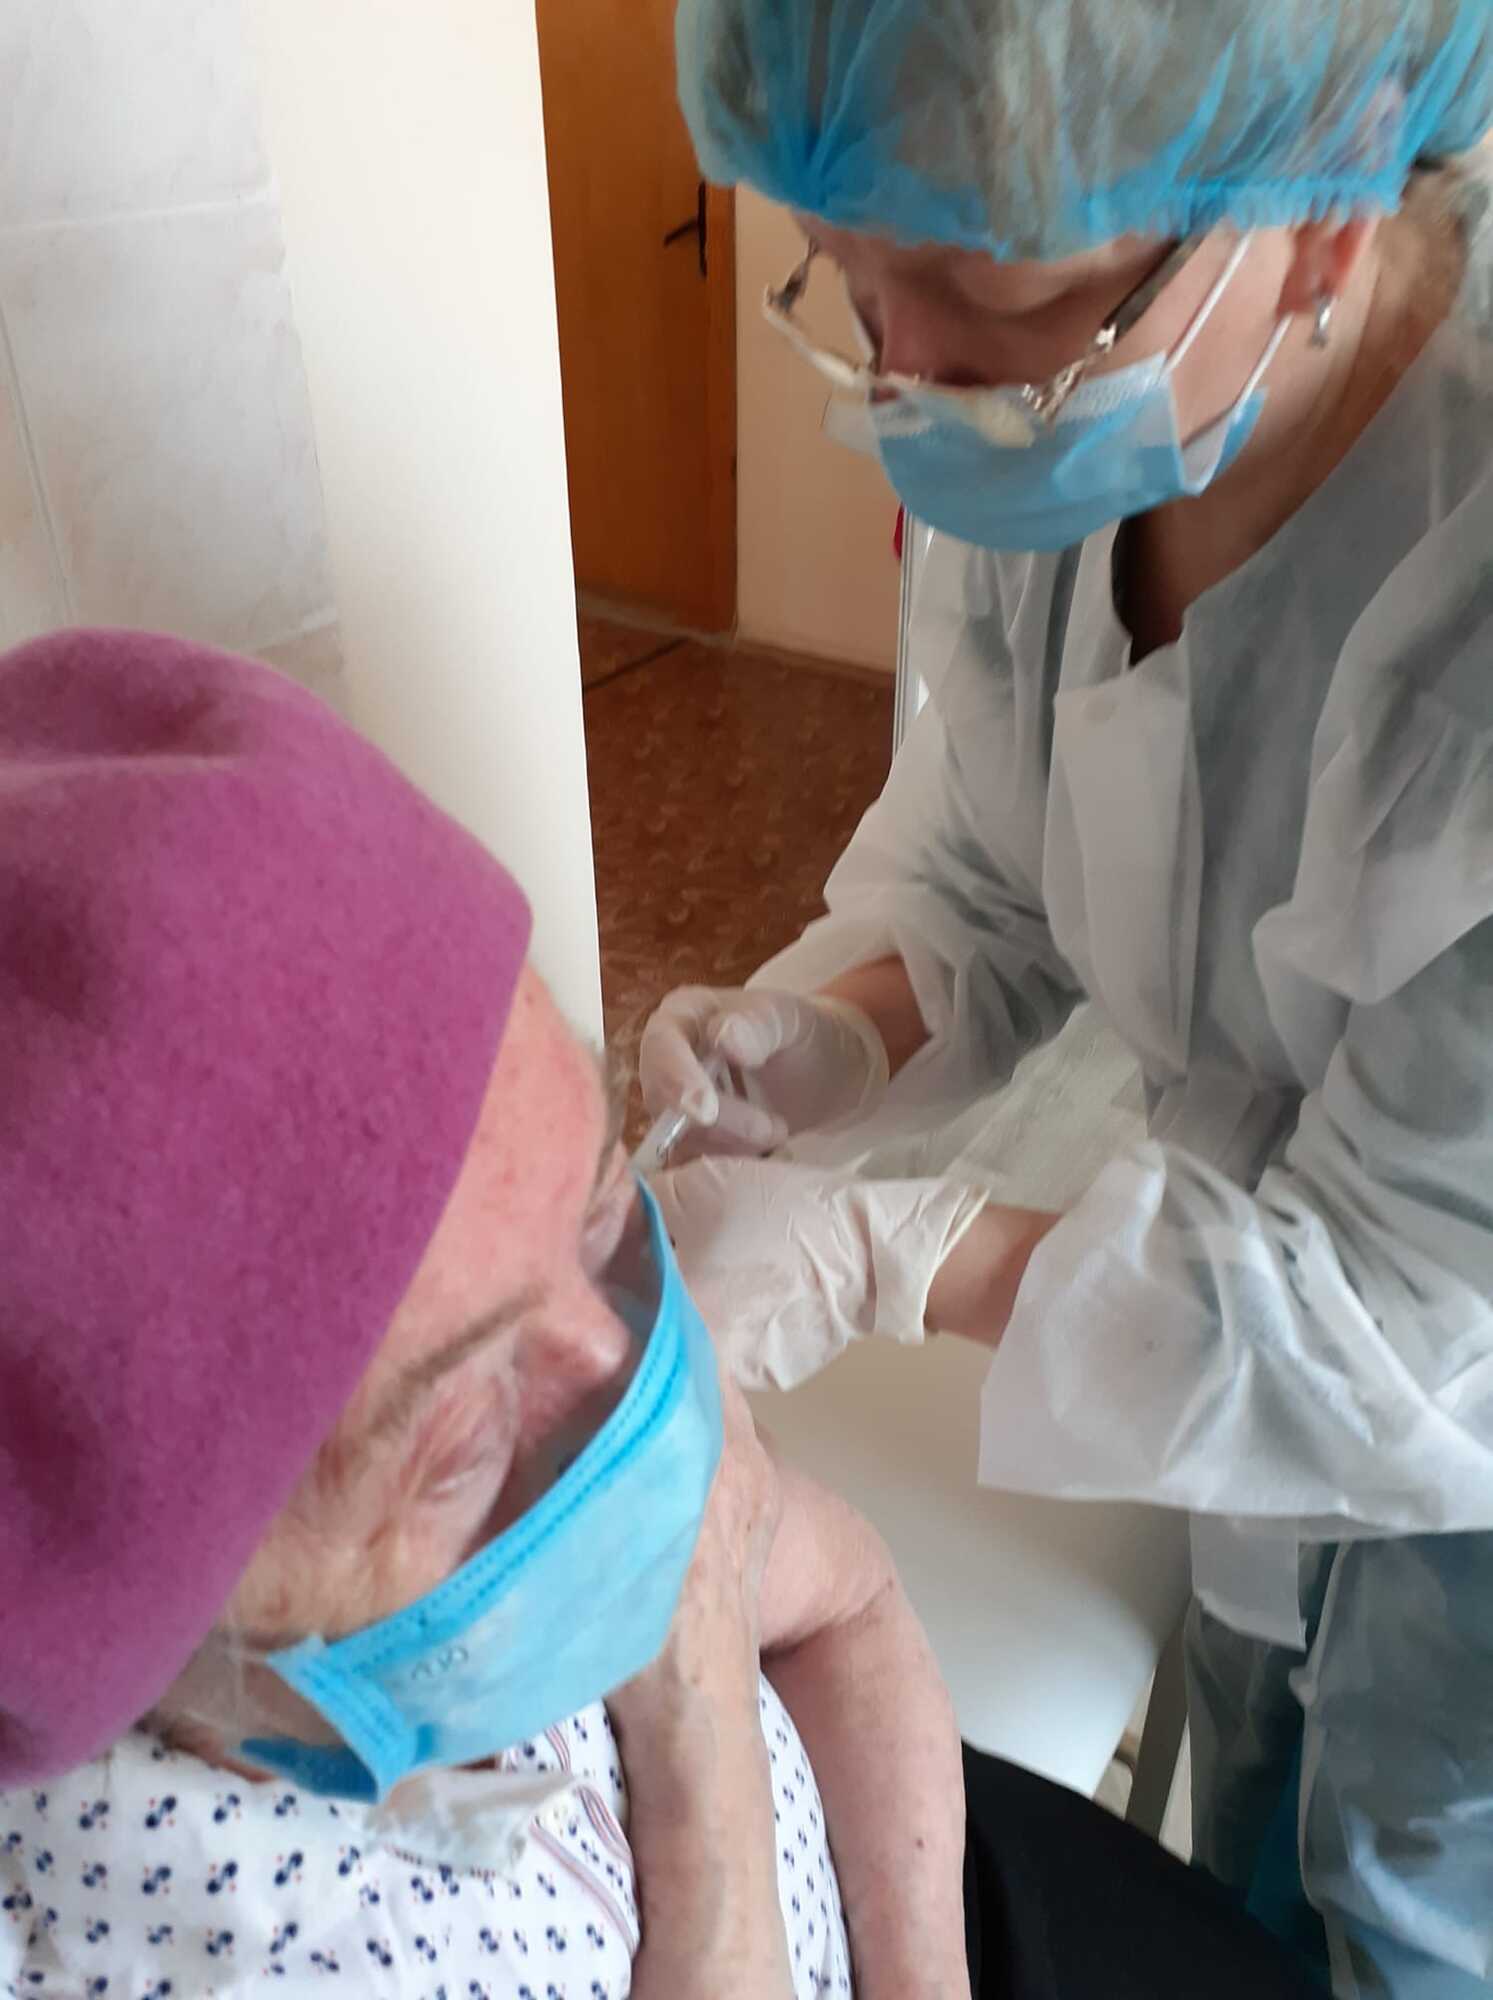 87-річна Валентина Василівна отримала першу дозу вакцини від коронавірусу.